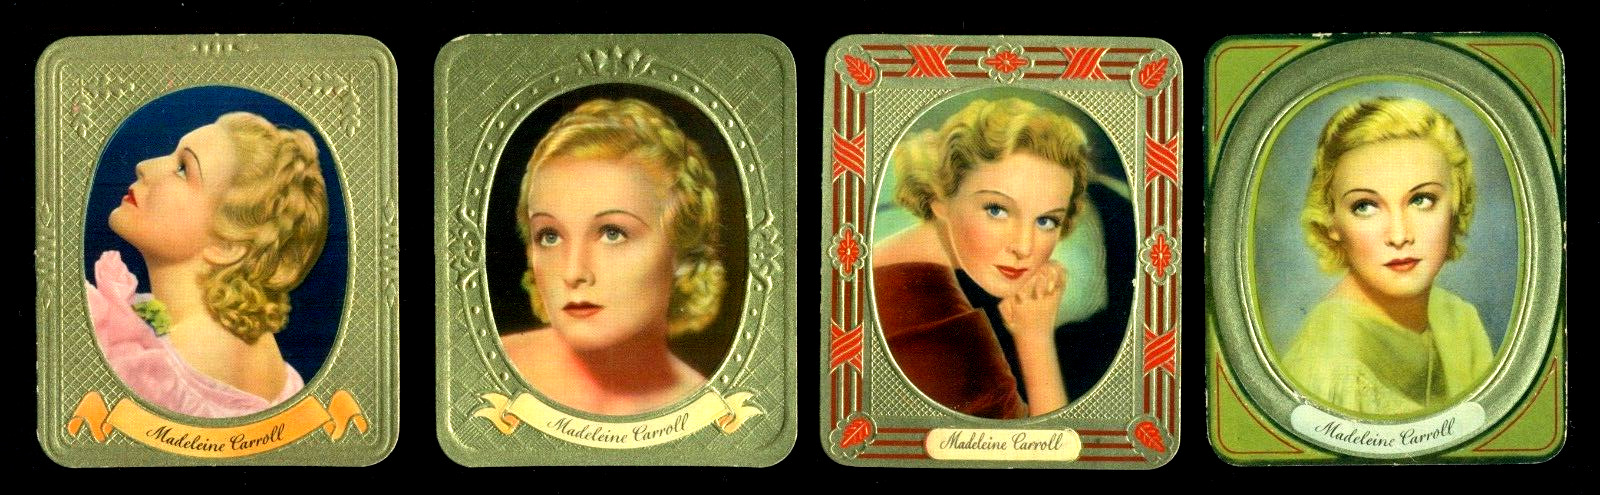 1936 MADELEINE CARROLL 4 AURELIA SULTAN CARD LUXUSBILD SERIE 147, 160, 191, 196